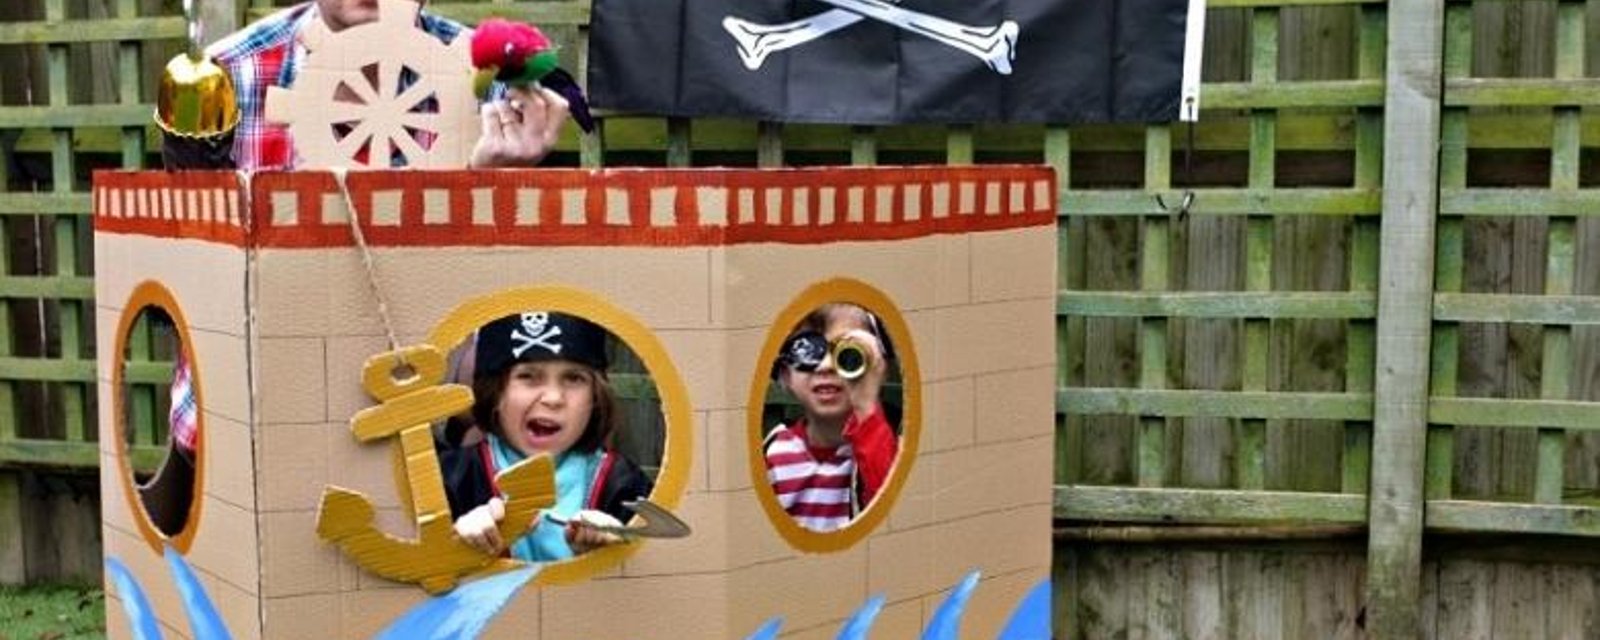 Fabriquez votre propre bateau pirate! Photo booth - photomaton en prime!